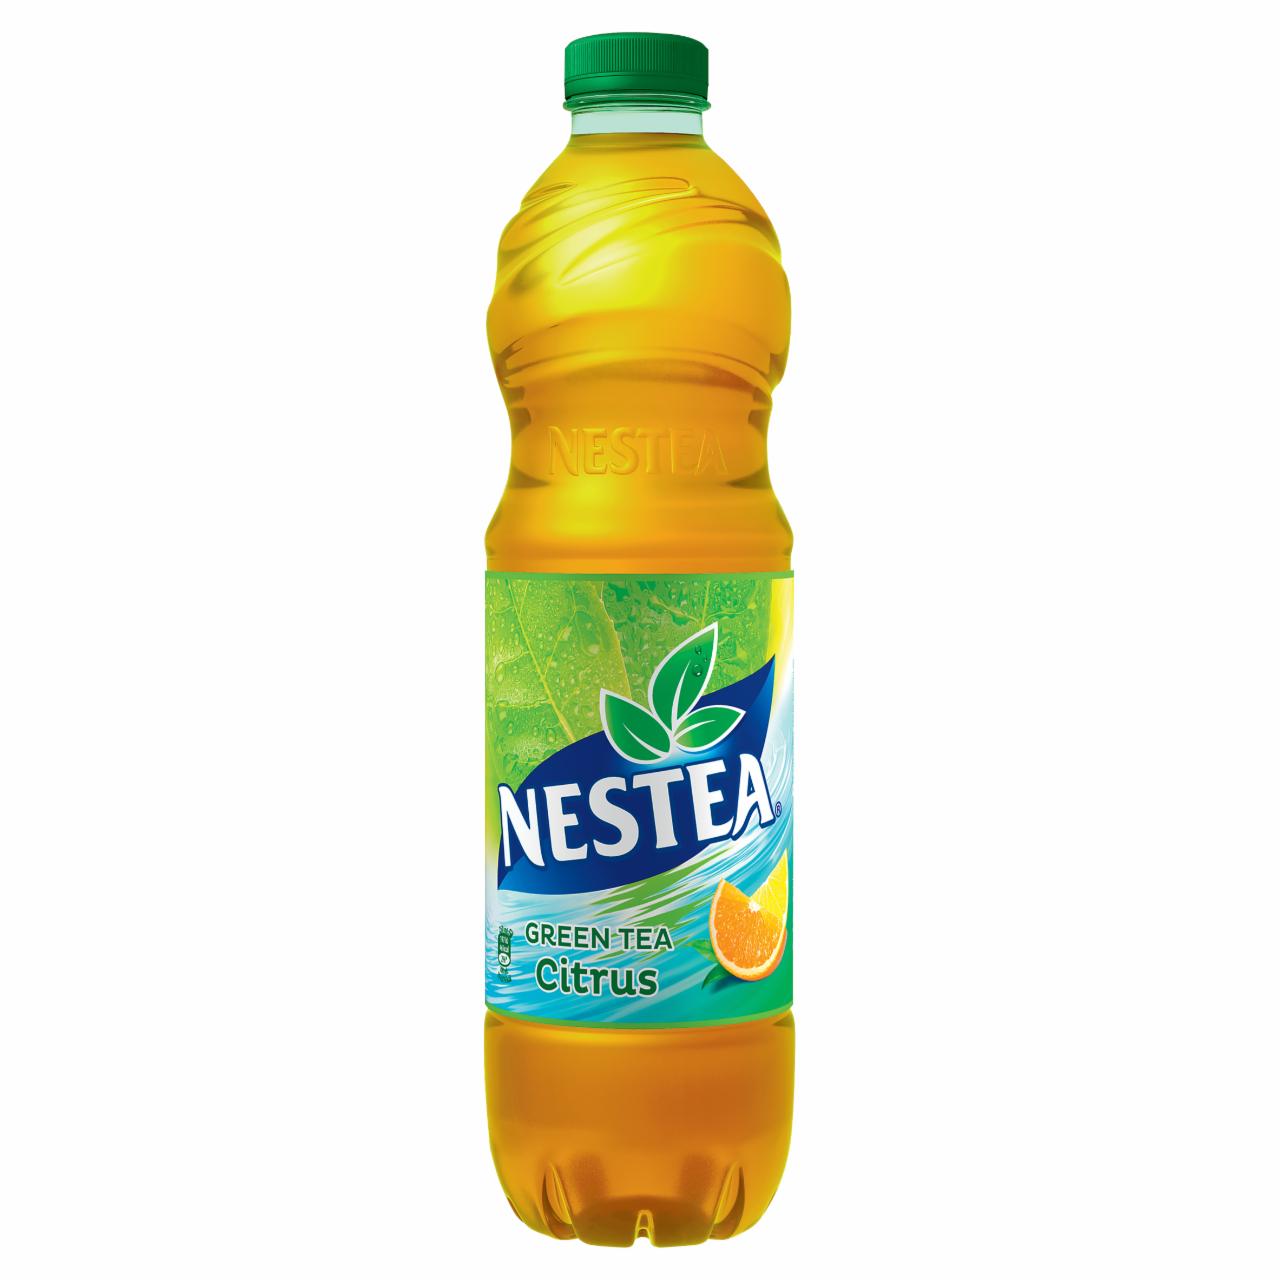 Képek - Nestea citrus ízesítésű zöldtea üdítőital cukrokkal és édesítőszerrel 1,5 l